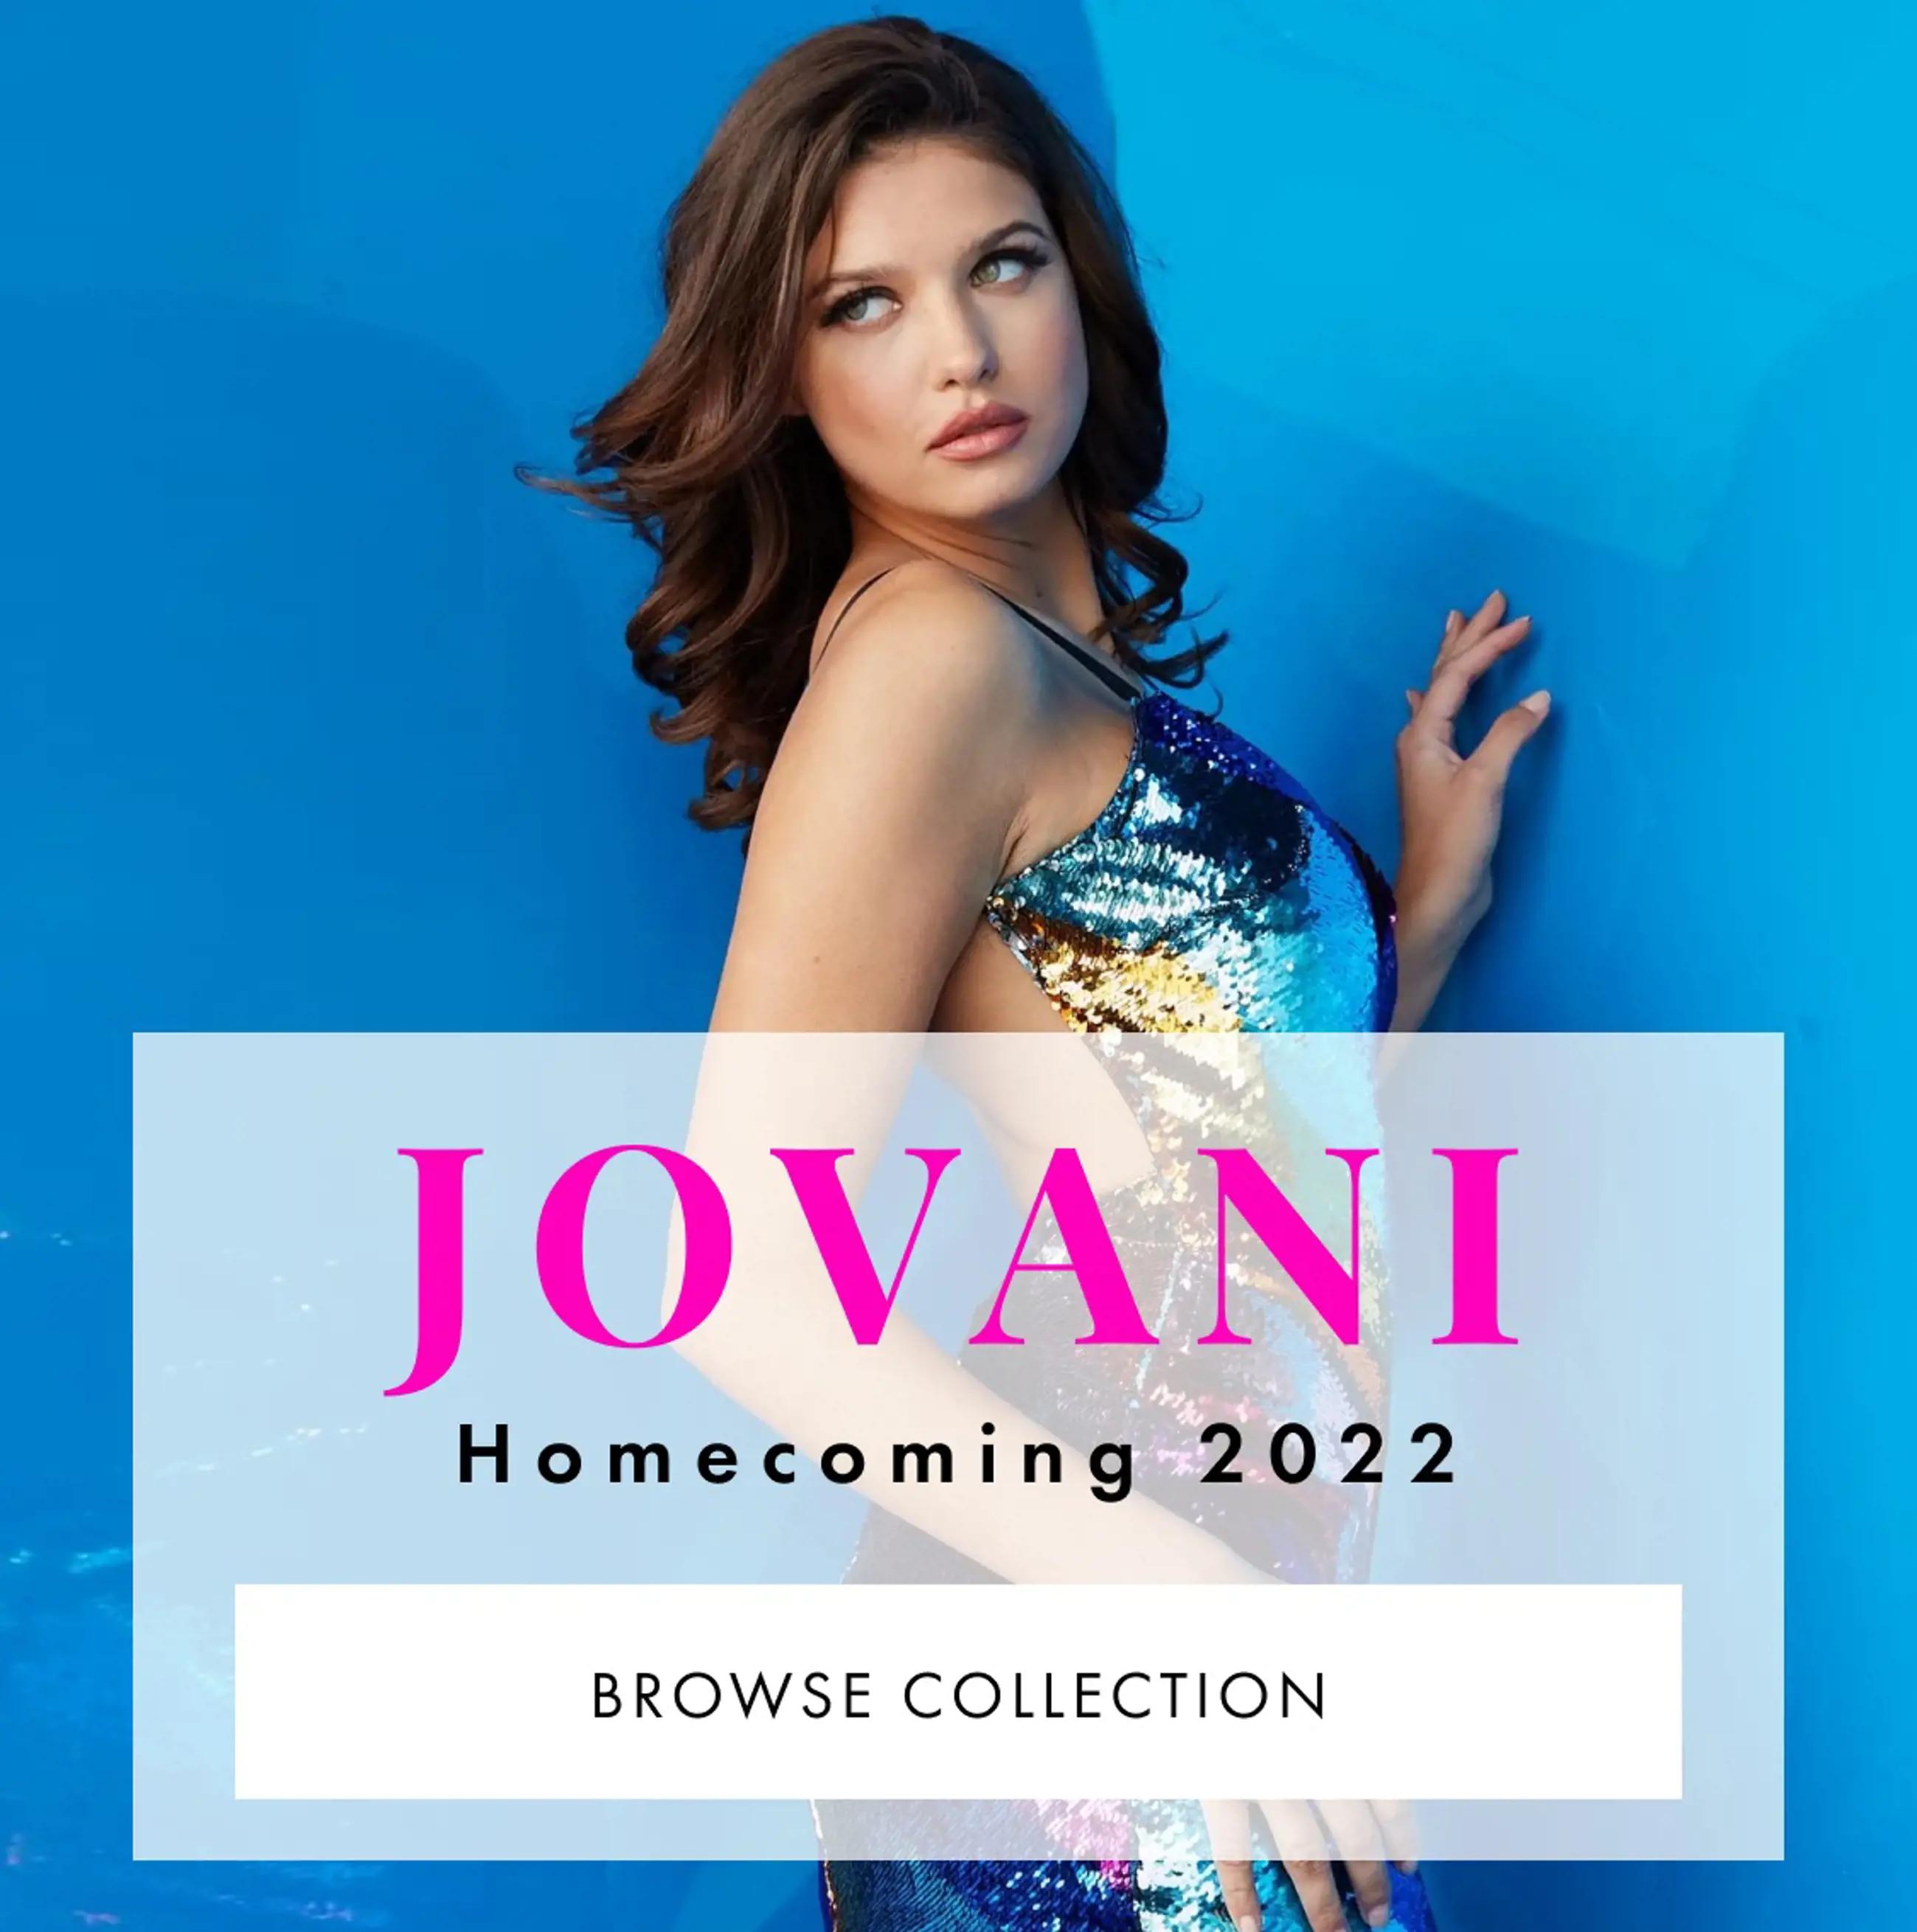 Jovani Homecoming 2022 Mobile